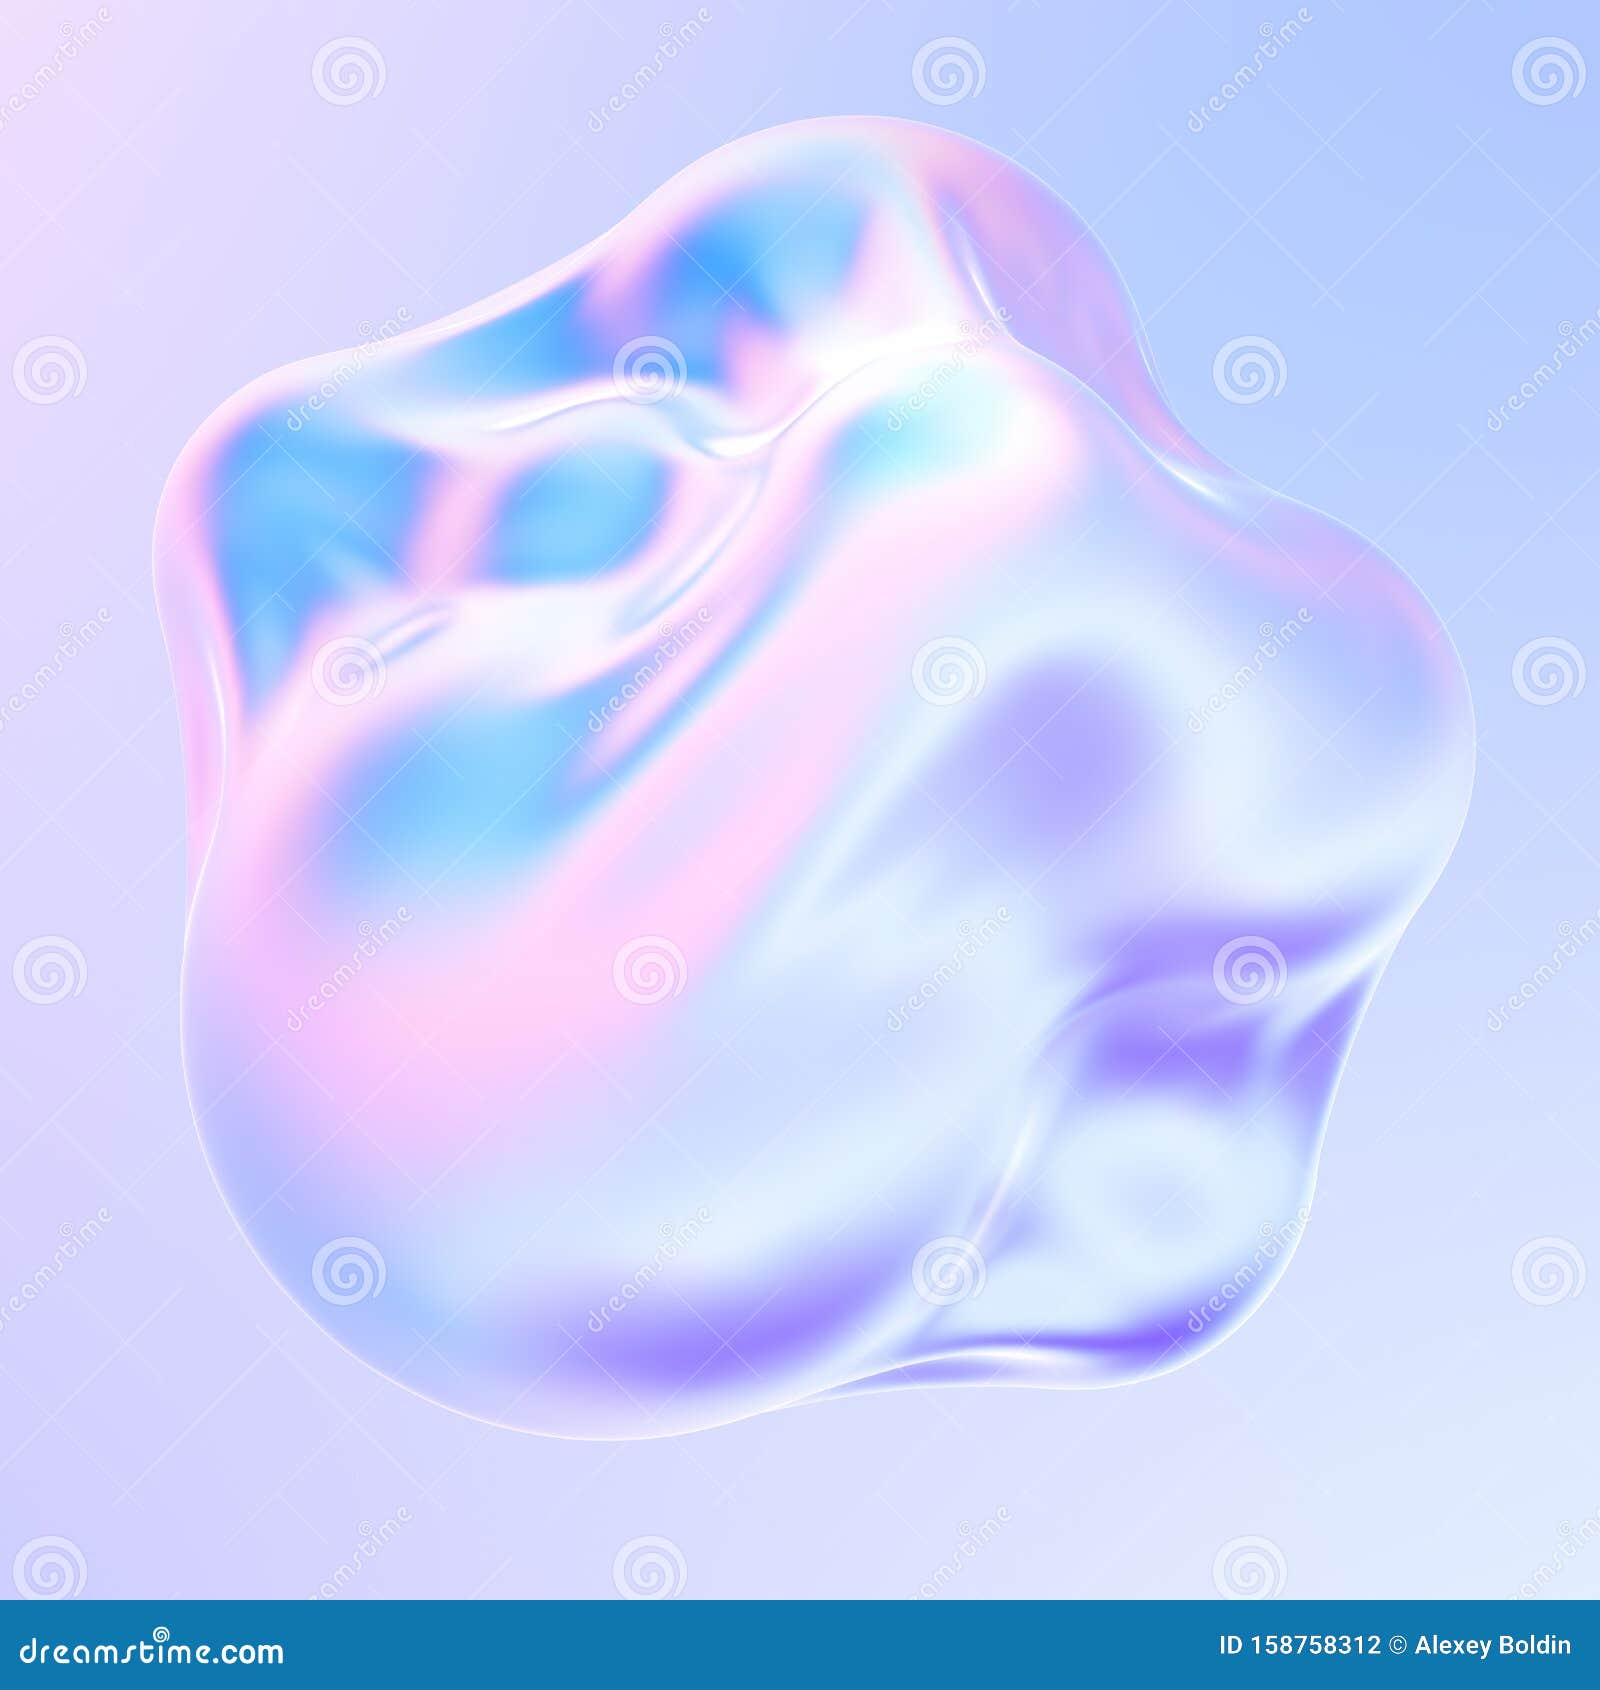 holographic liquid metal 3d  fluid bubbles